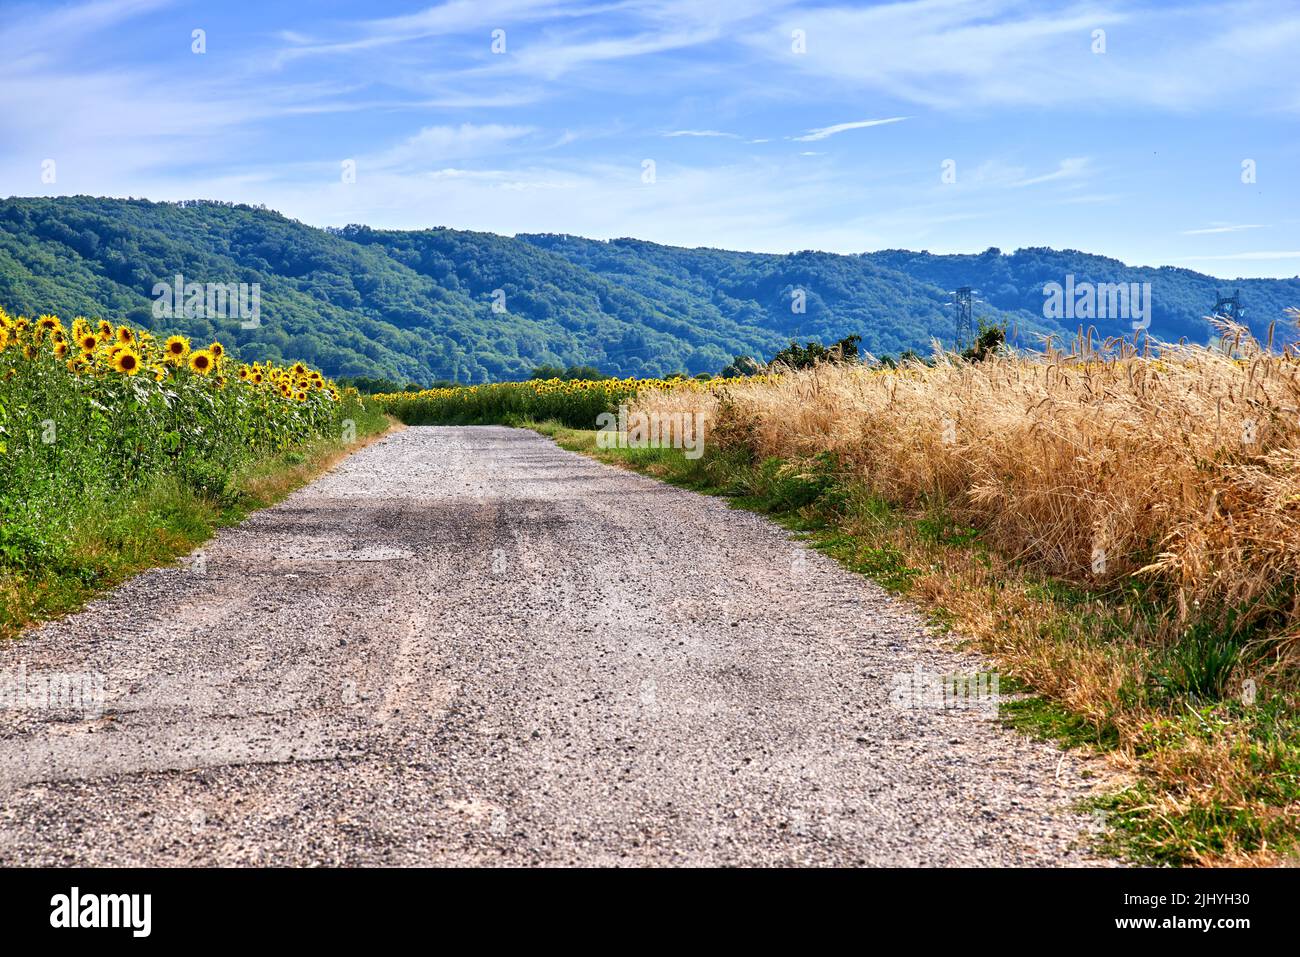 Blick auf die Landstraße mit einer grünen Farmlandschaft auf dem Land. Bezaubernde Natur mit frischen Sonnenblumen- und Gerstenfeldern. Isoliert Stockfoto